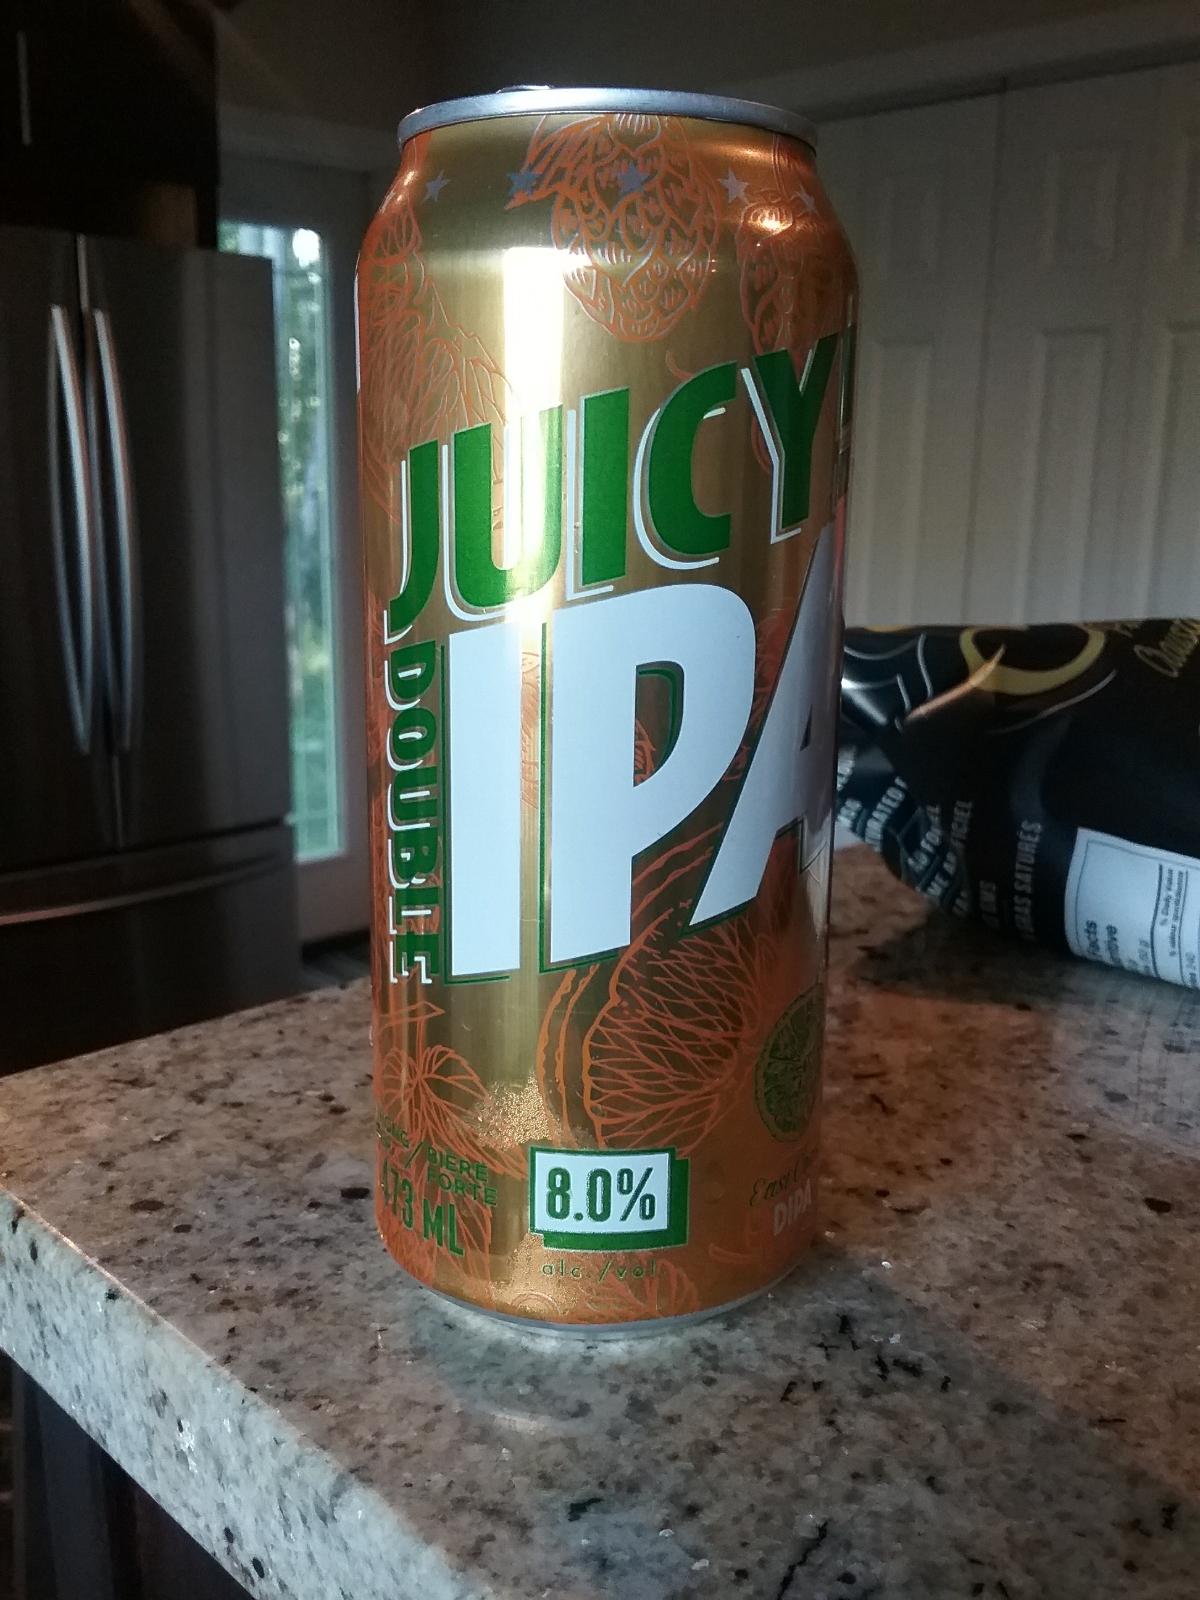 Juicy! Double IPA